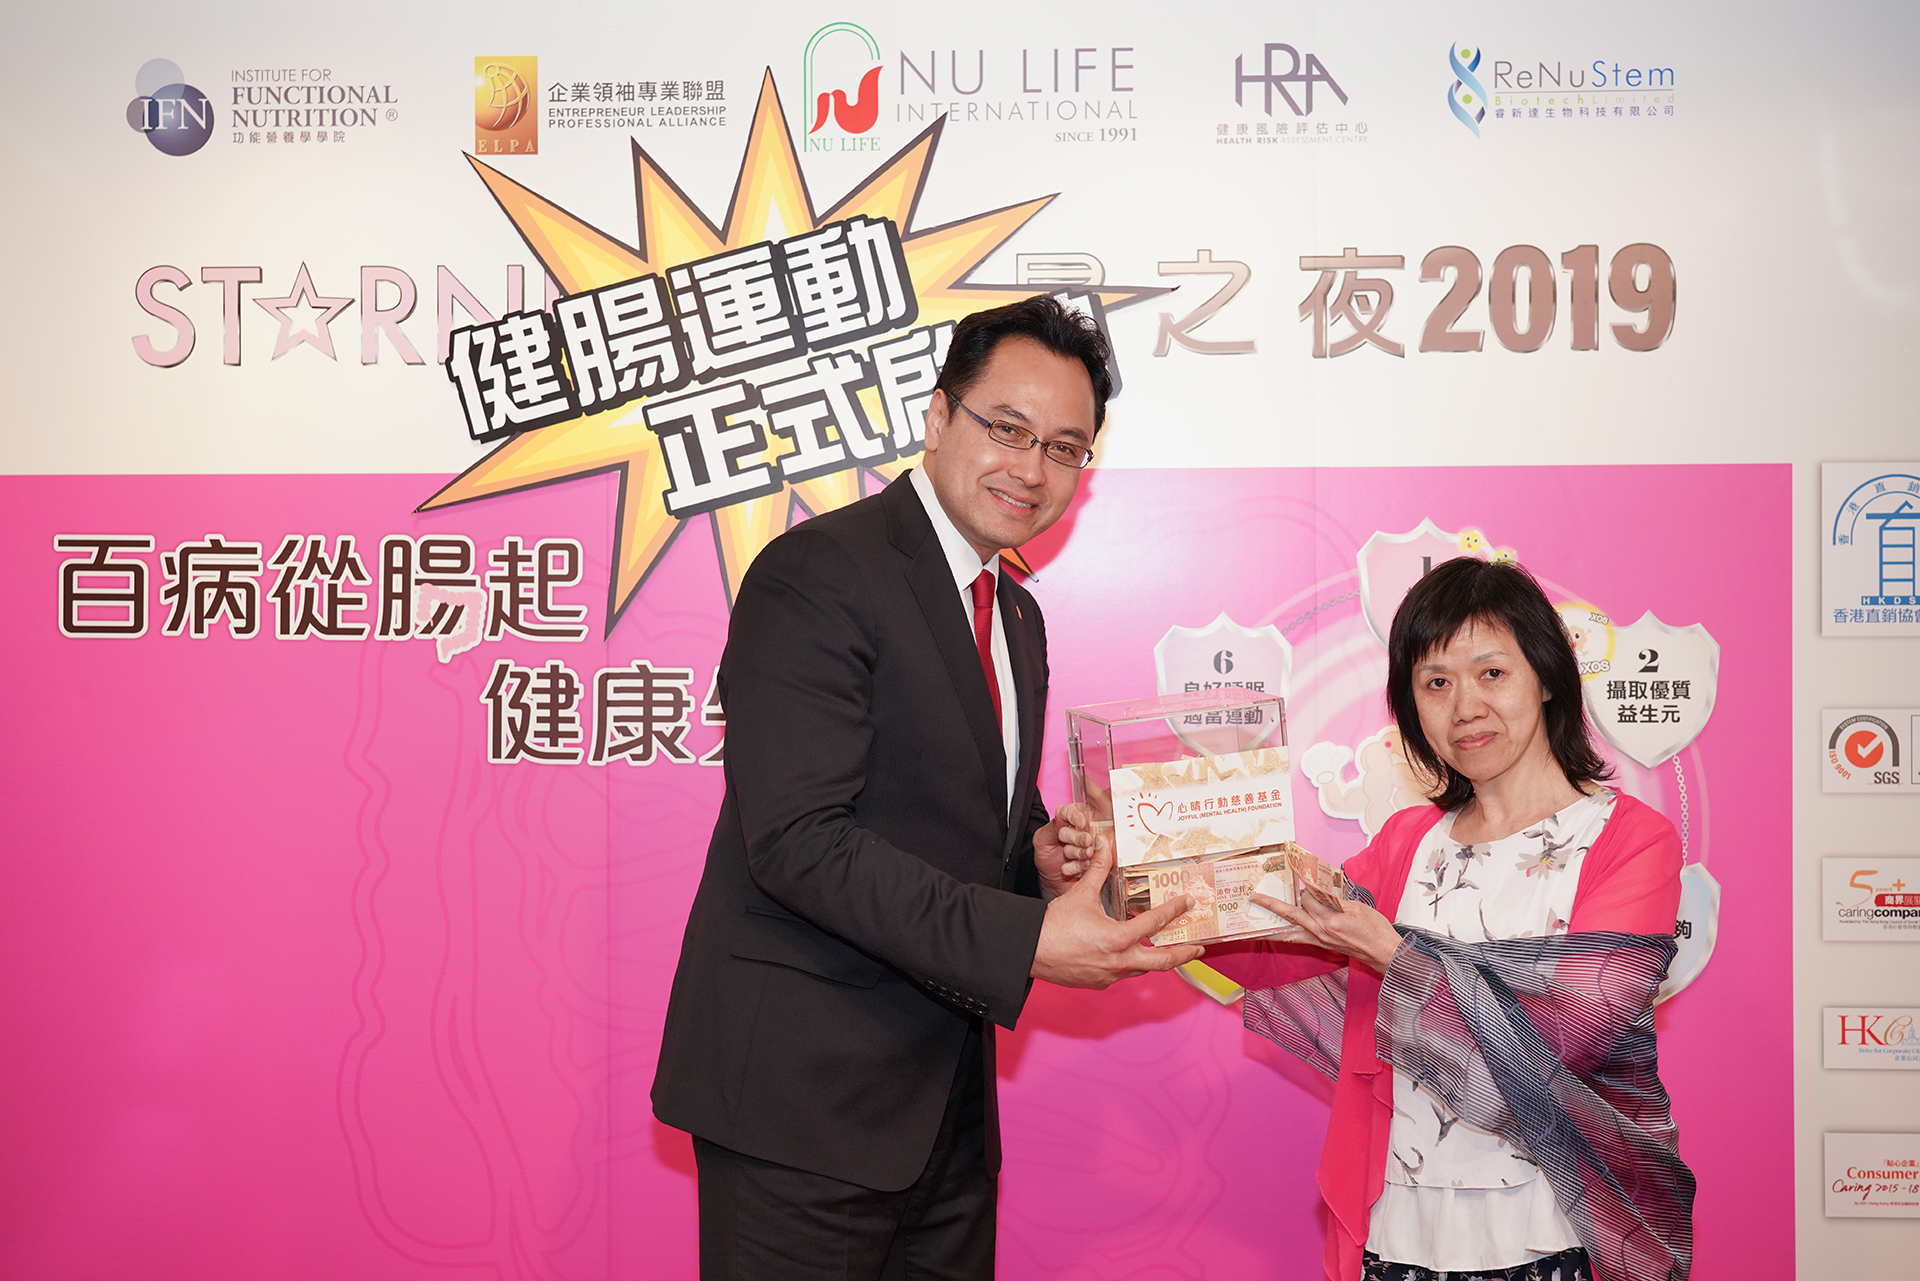 恭賀曹順喜女士從星級百萬富翁遊戲贏取HK$10,000獎金並與公司合共損助HK$4,000予「心晴行動慈善基金」